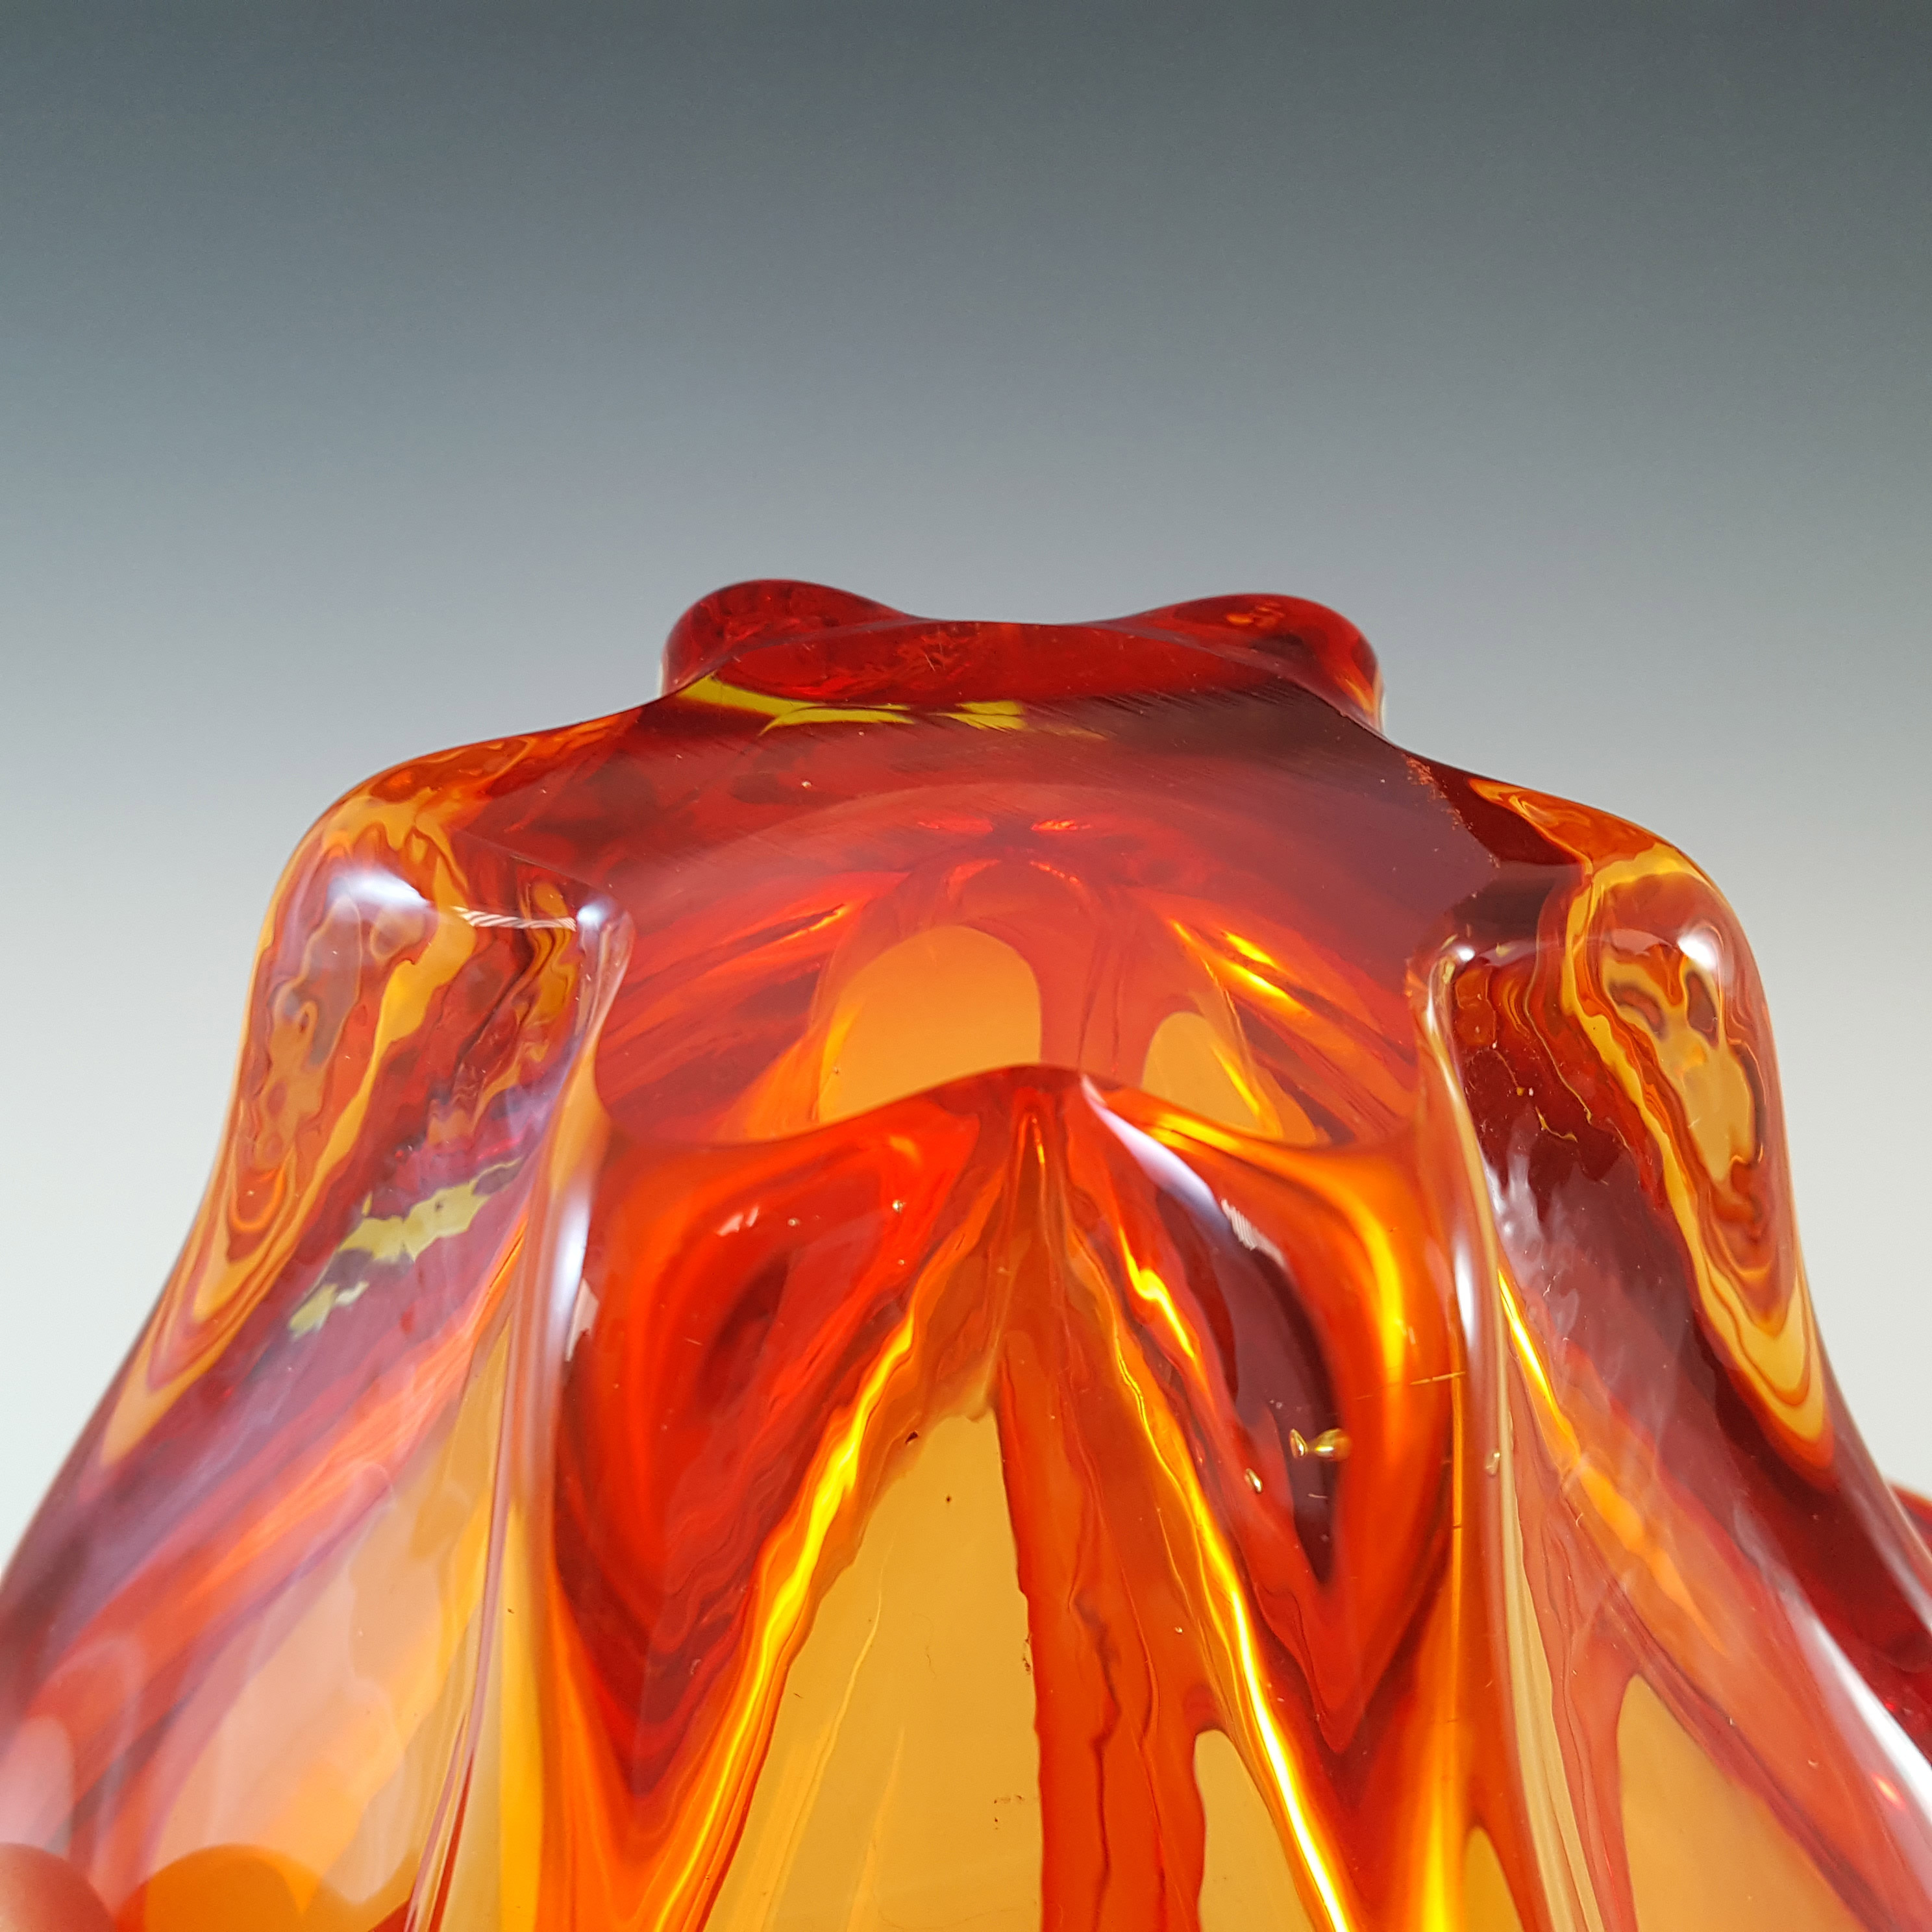 Cristallo Venezia CCC Murano Red & Amber Sommerso Glass Bowl - Click Image to Close